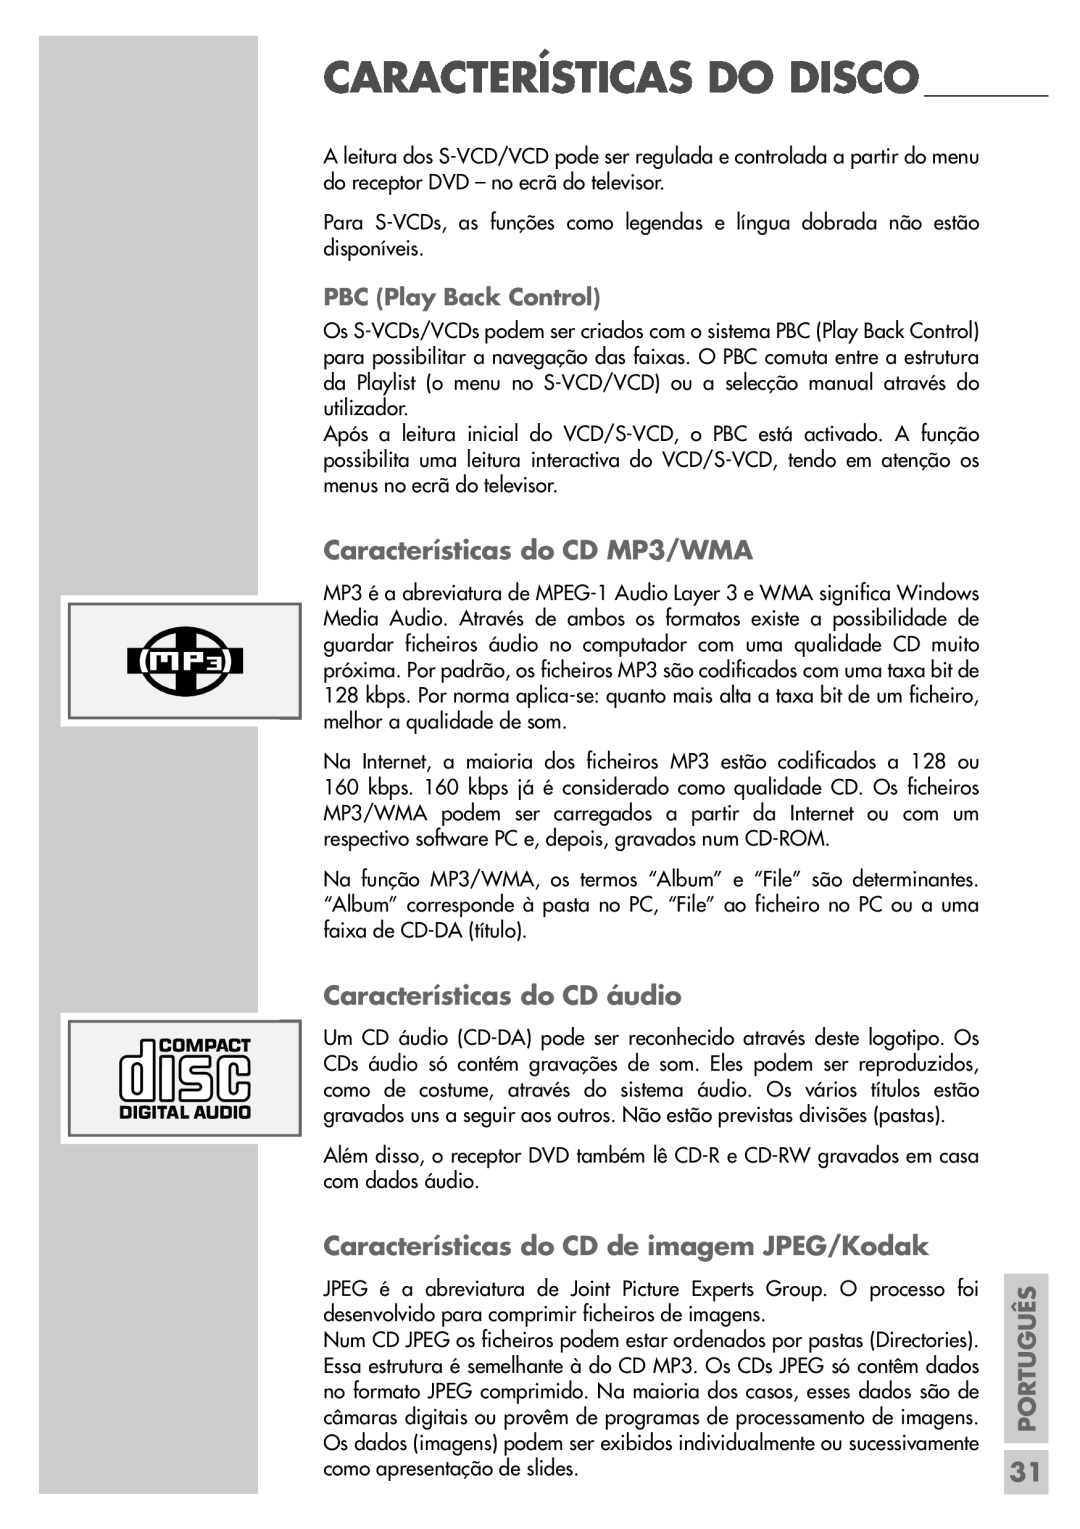 Grundig DR 5400 DD Características do CD MP3/WMA, Características do CD áudio, Características do CD de imagem JPEG/Kodak 